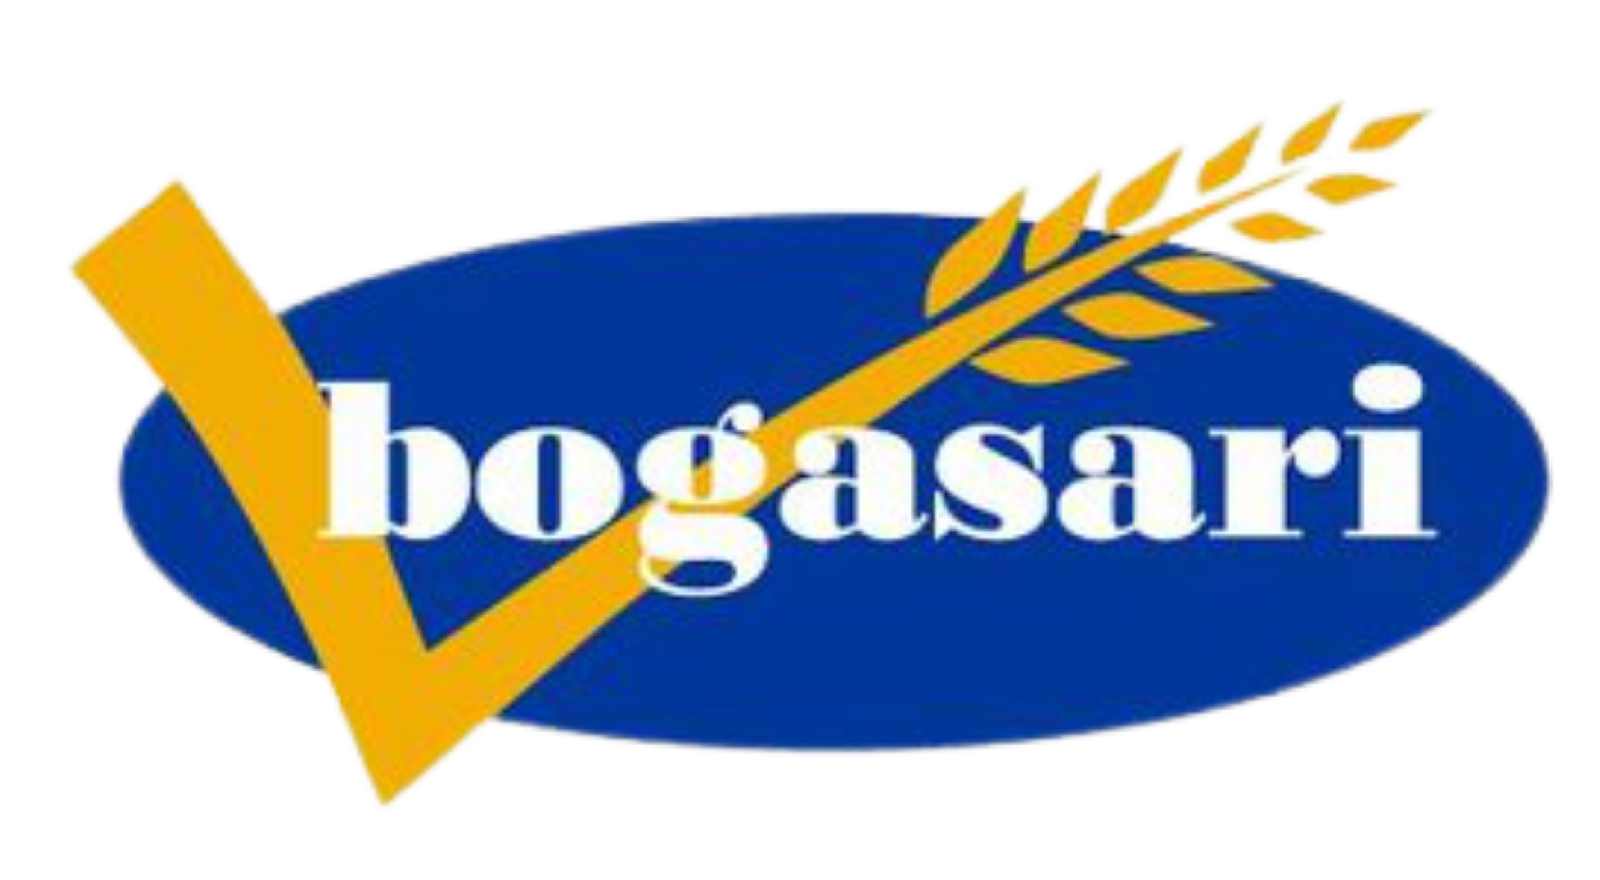 Bogasari